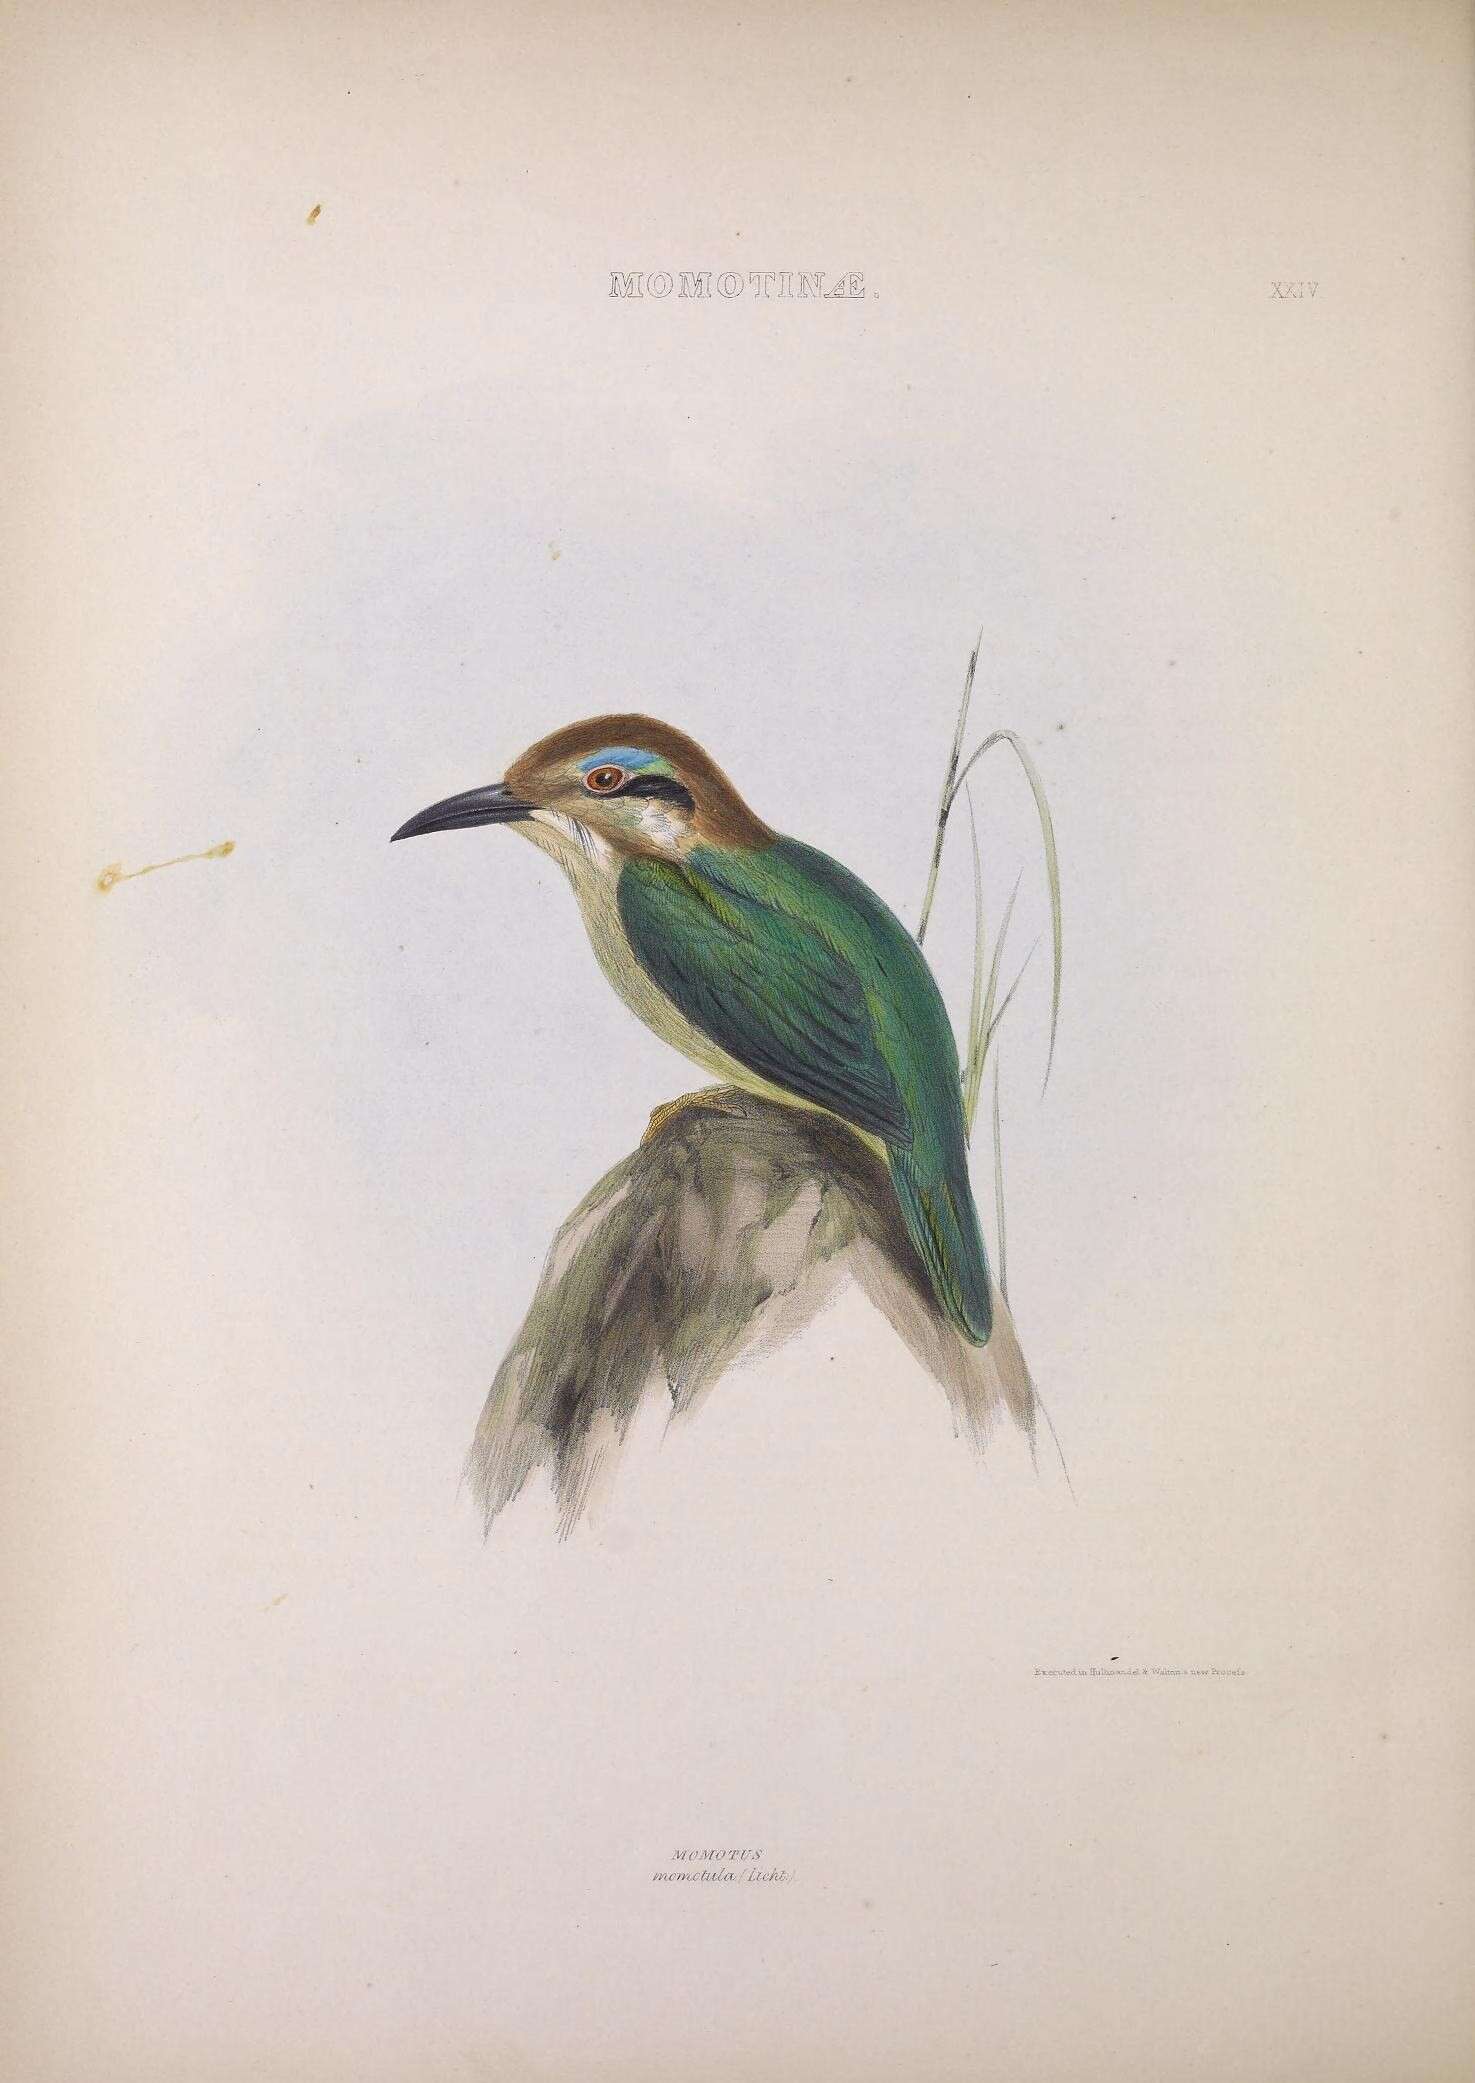 Image of Hylomanes Lichtenstein & Mhk 1839